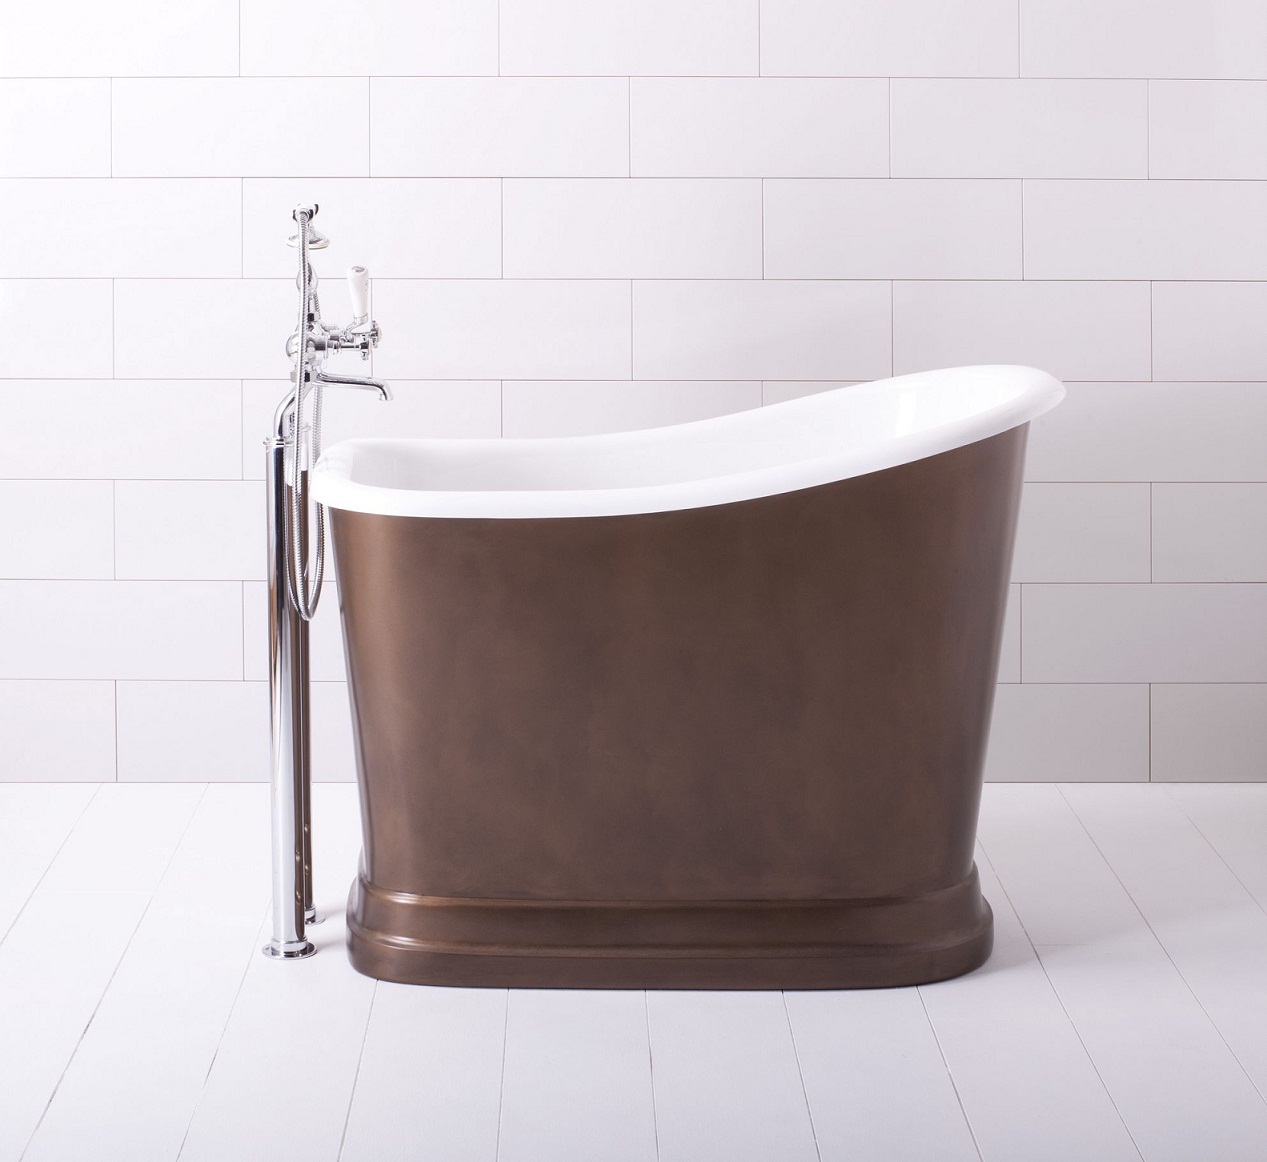 TUBBY TORRE Traditional Bathrooms узкая и высокая ванная в классическом стиле на подставке (ALB.TUBT)